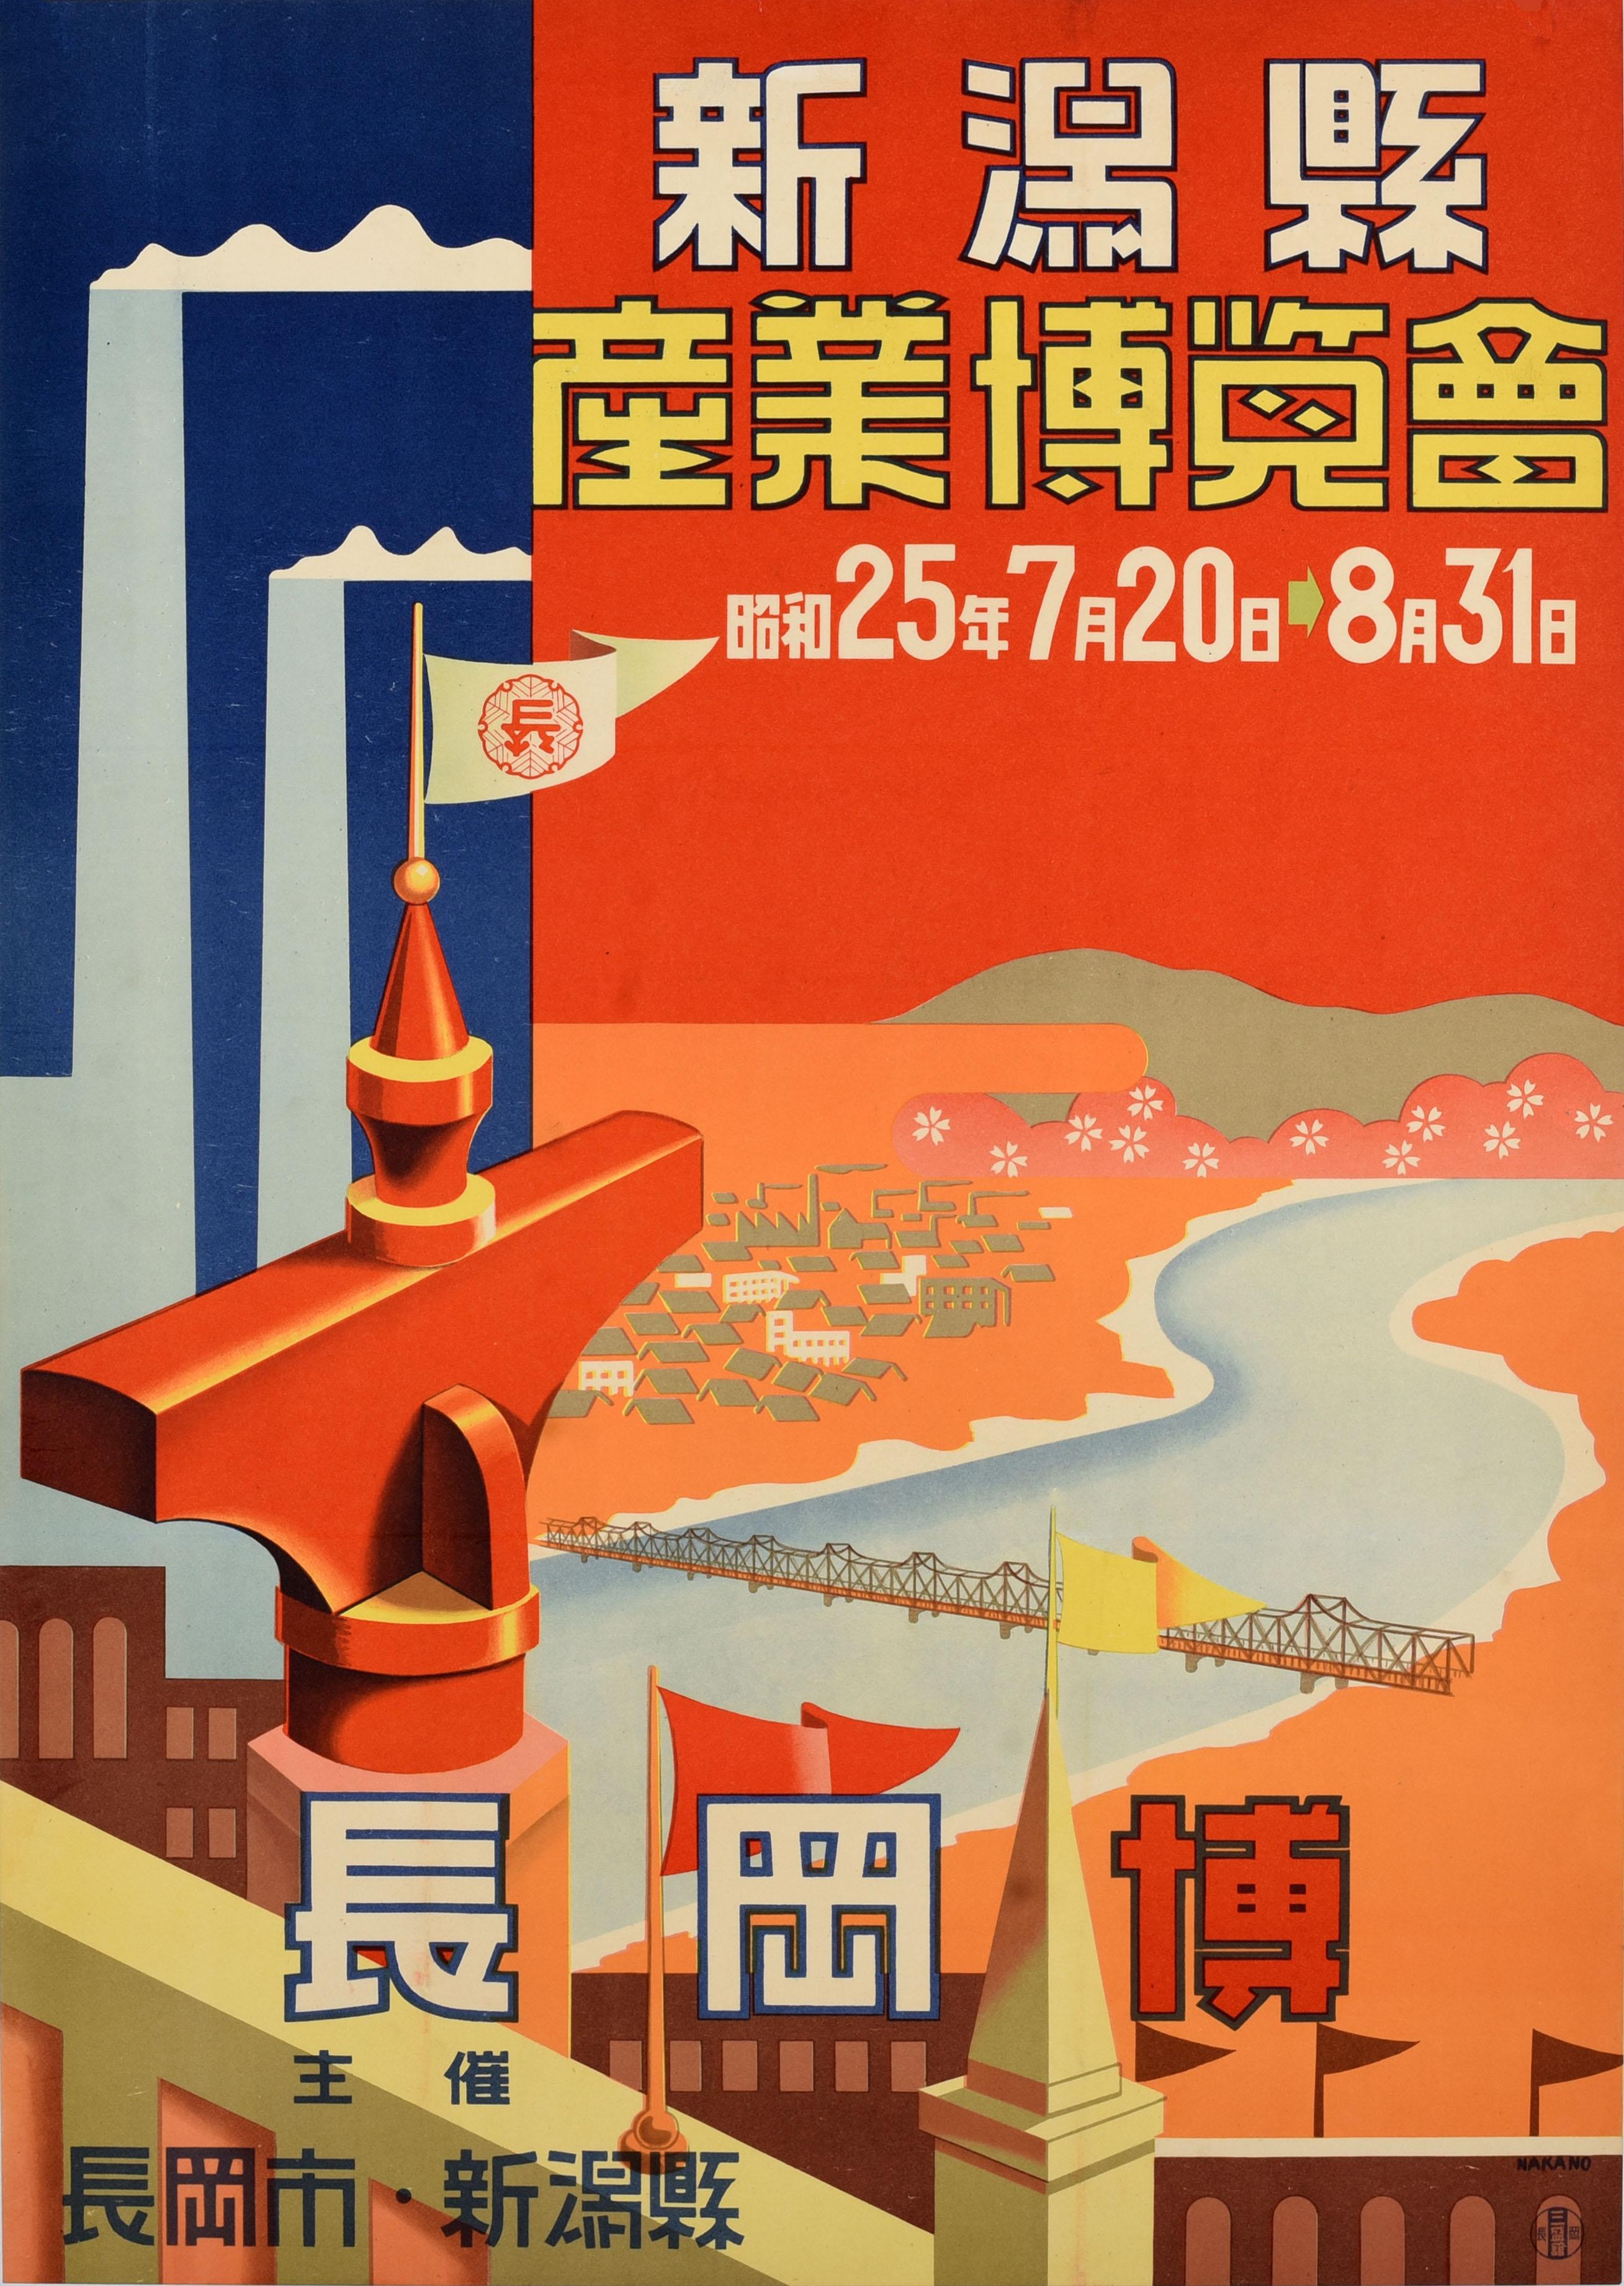 Print Unknown - Affiche publicitaire vintage originale de voyage en Asie, Niigata Industry Expo Japan